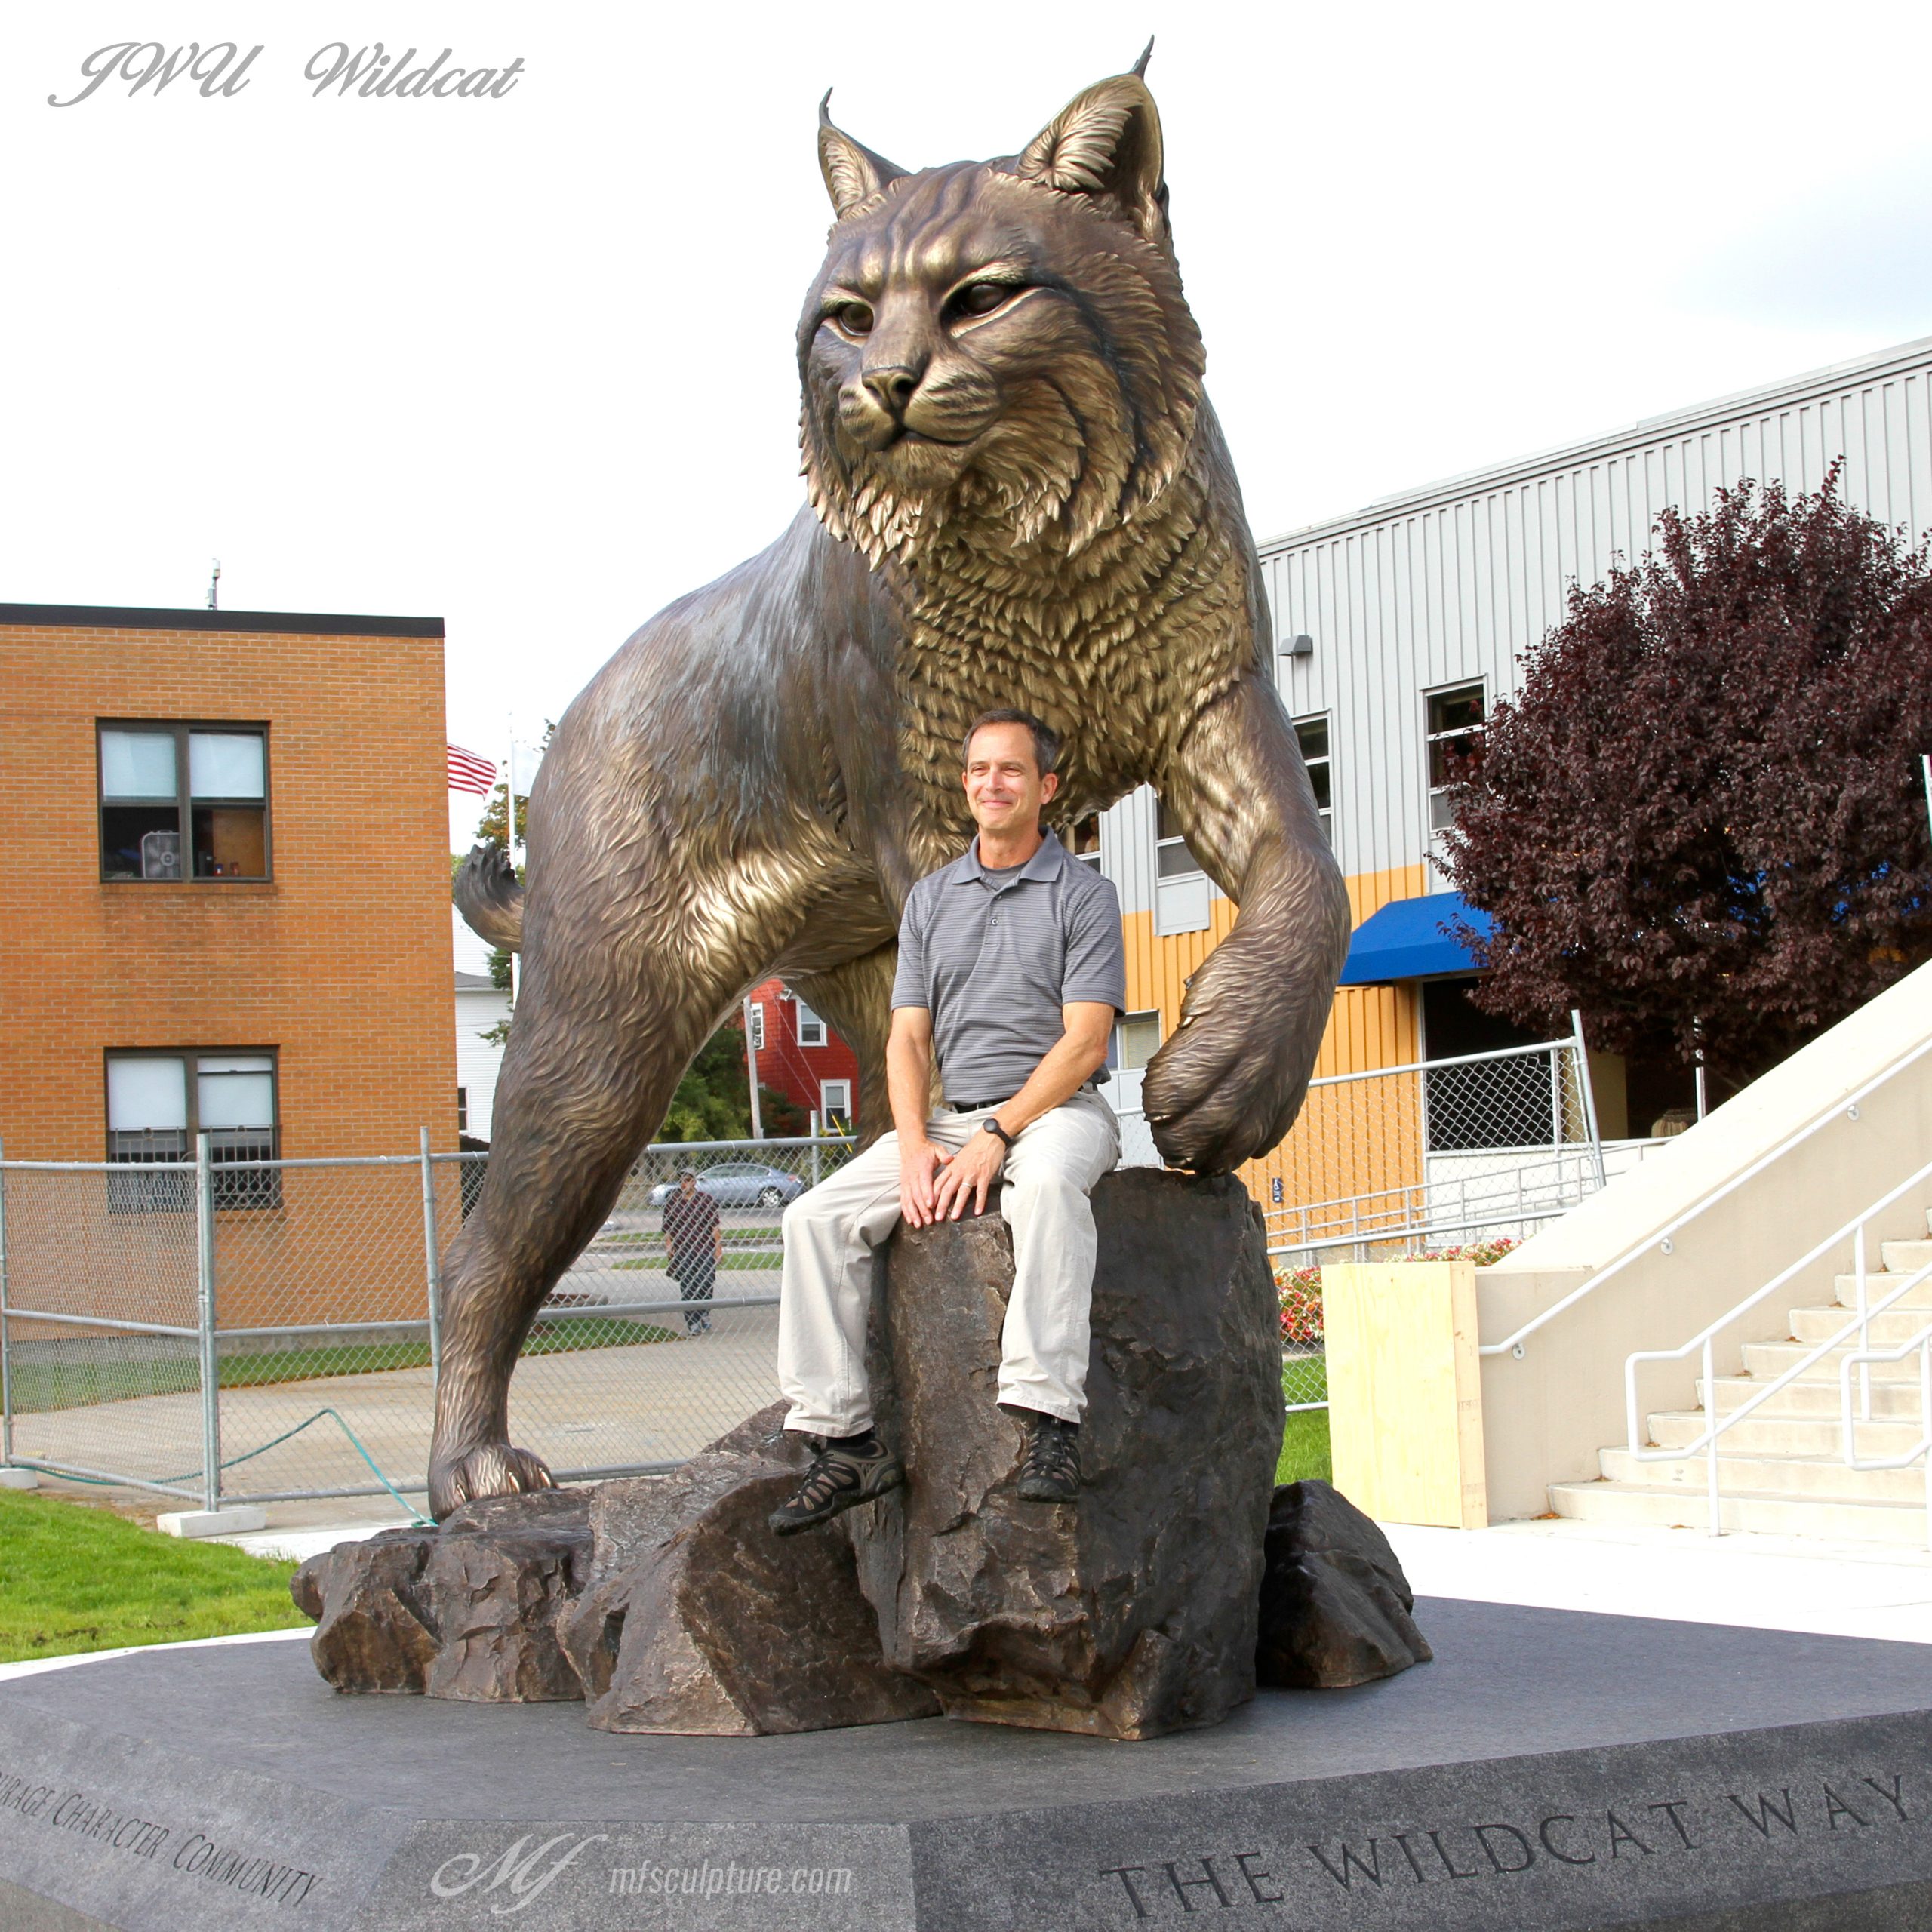 JWU Wildcat Monument